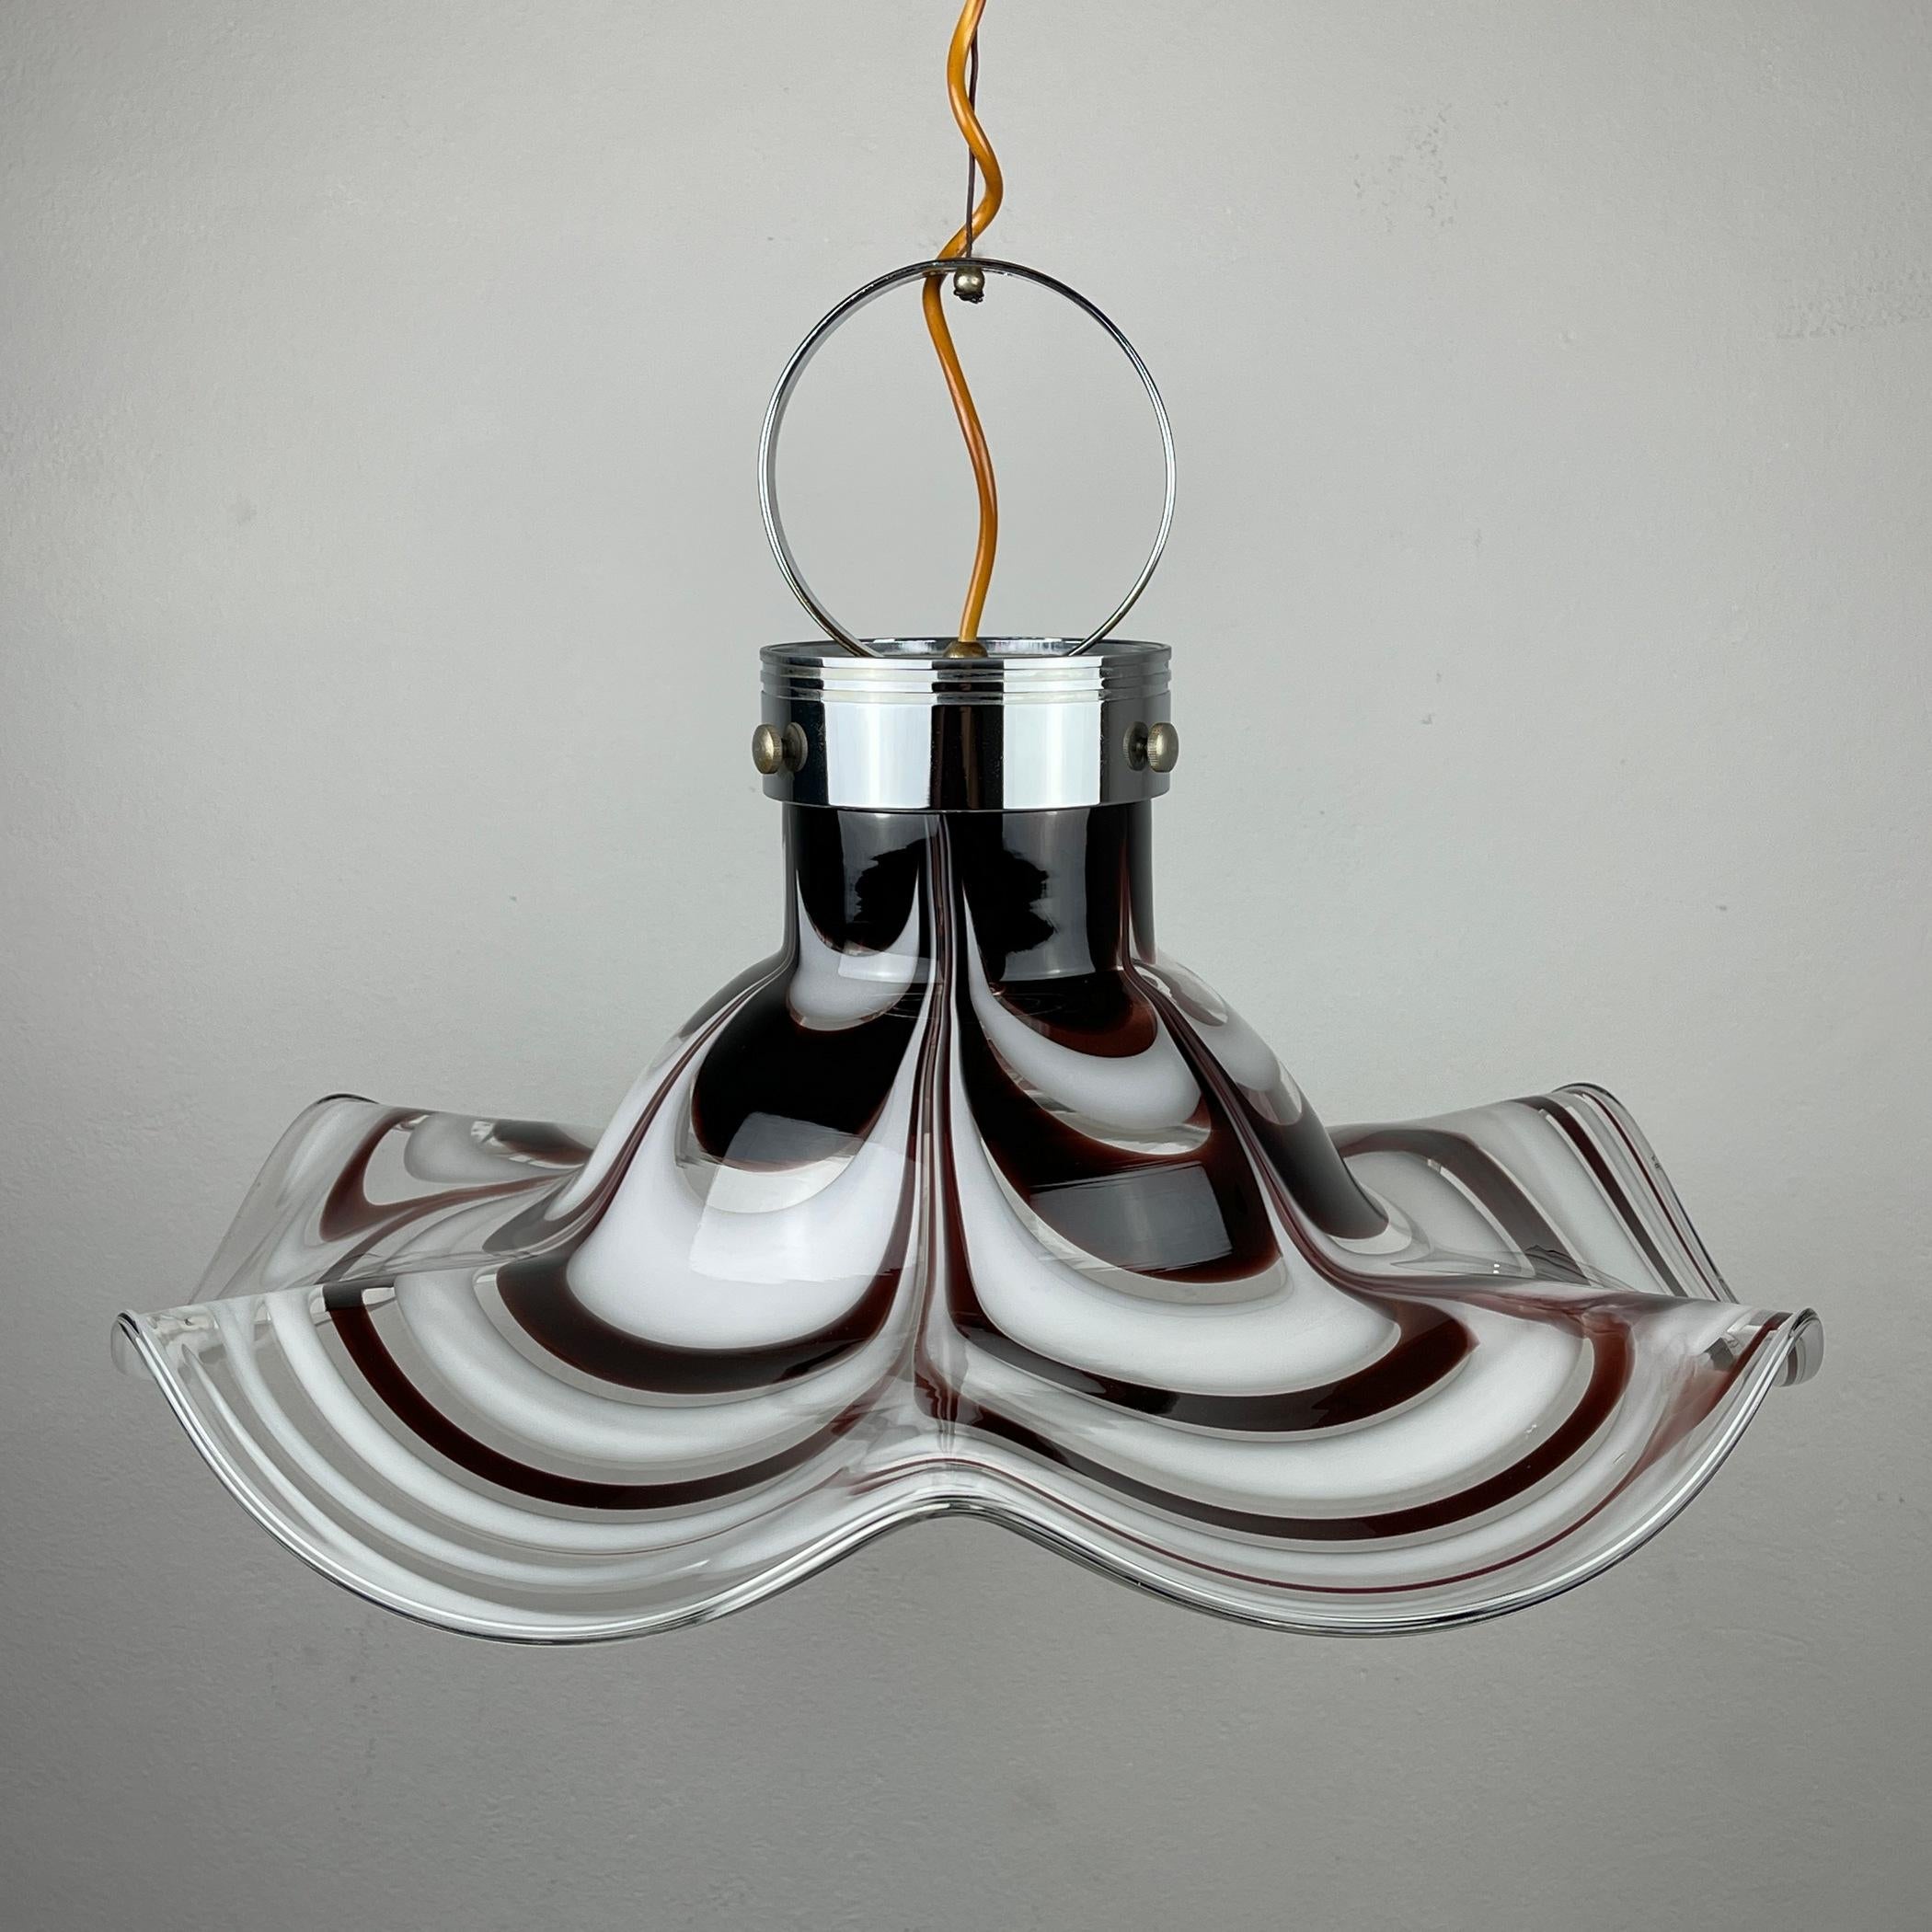 Impressionnante lampe pendante originale de Murano, produite par AV Mazzega en Italie, dans les années 1970. L'abat-jour est moulé à la main. La lampe présente également un véritable savoir-faire de Murano. AB Mazzega a été fondée par Angelo